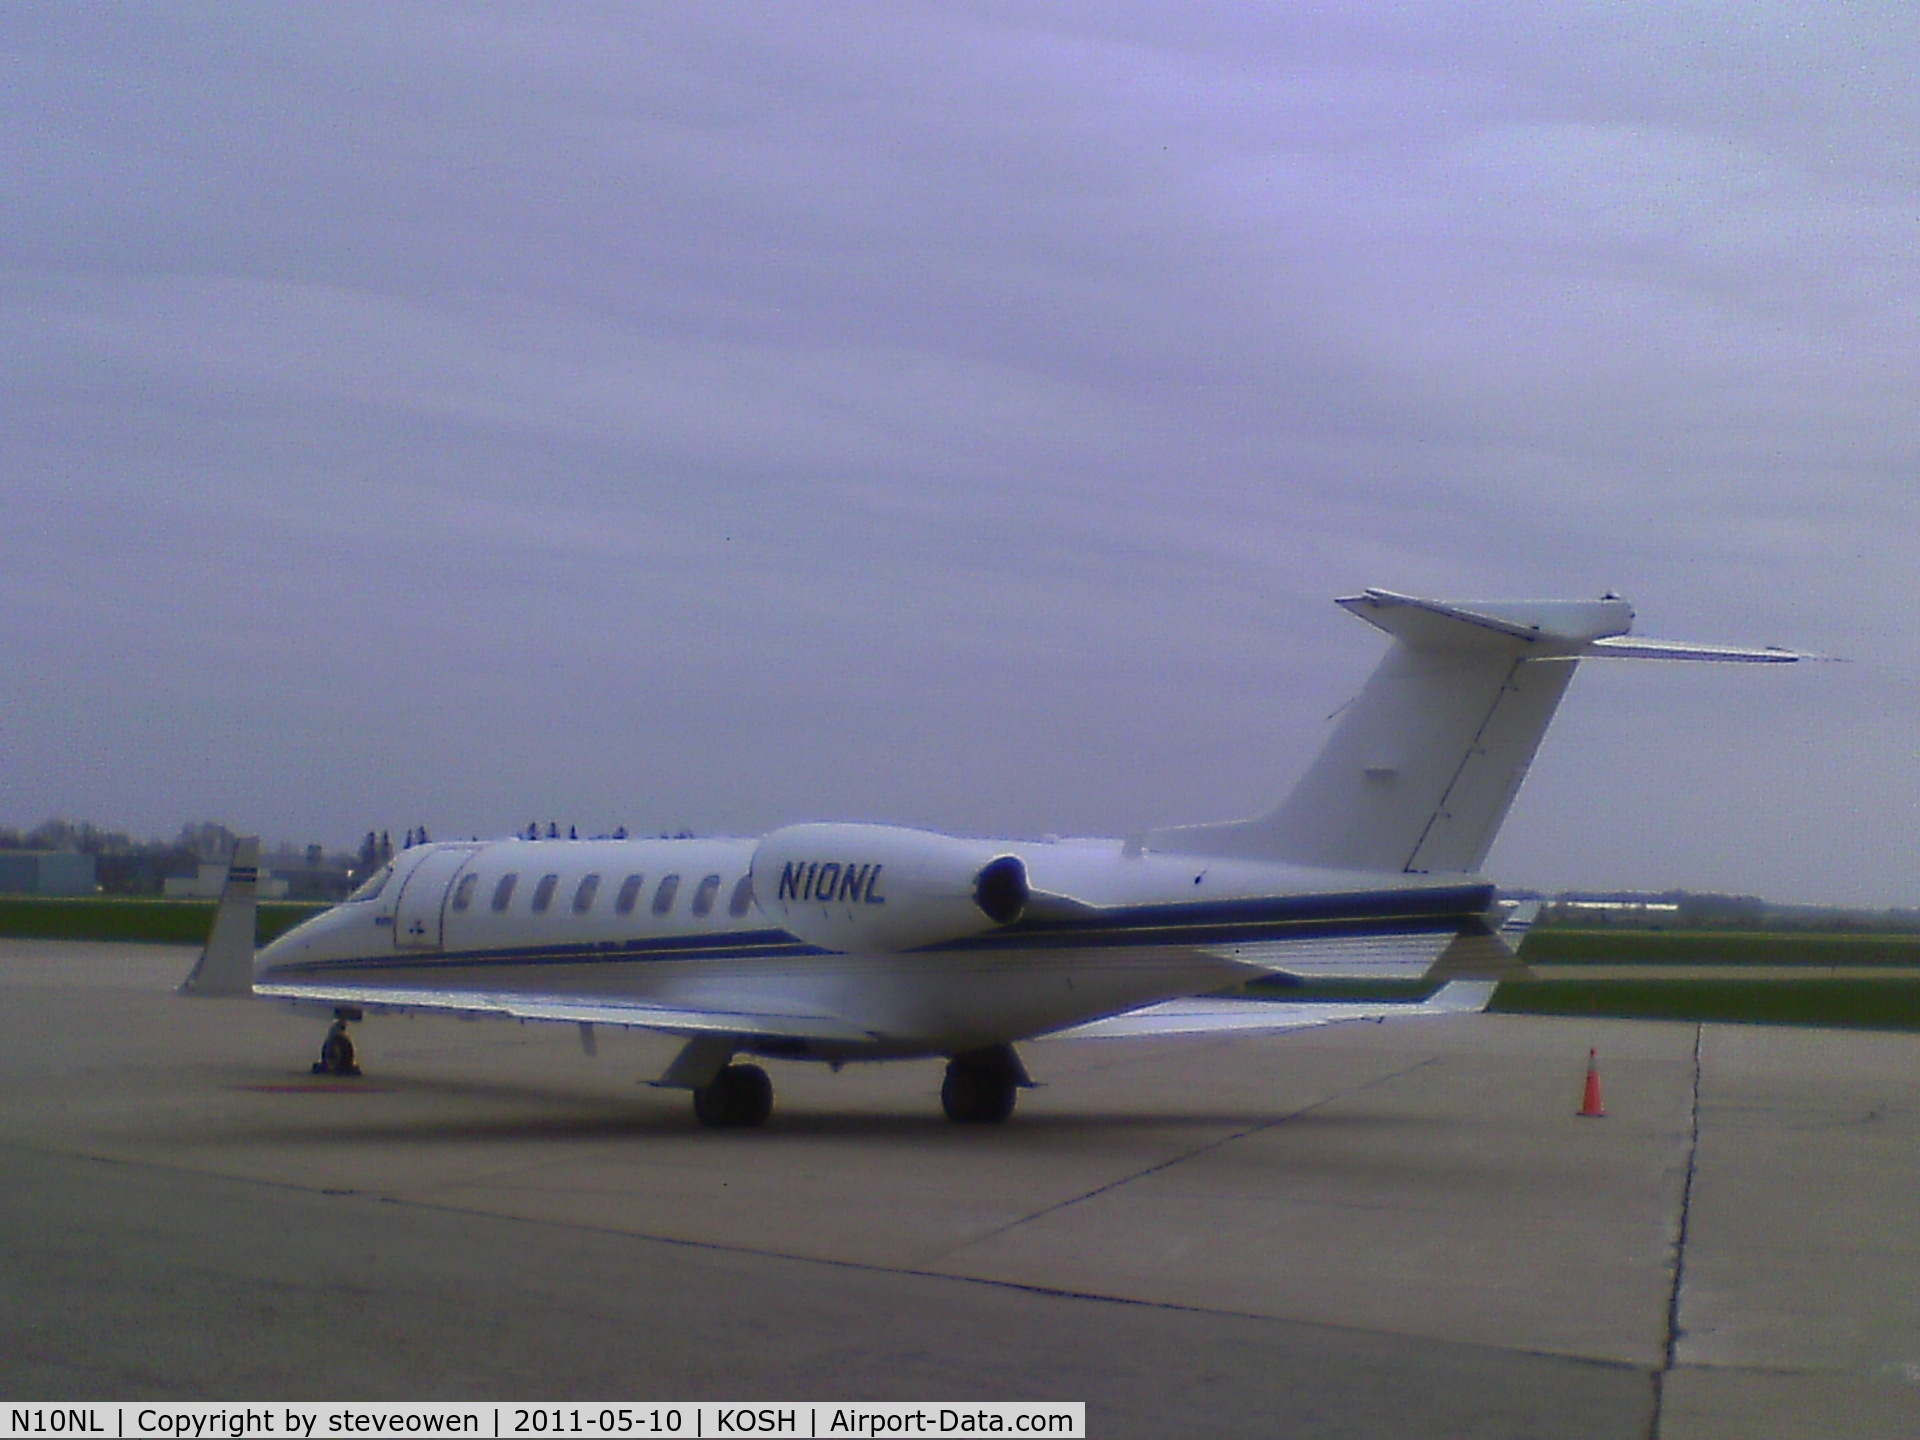 N10NL, 2000 Learjet 45 C/N 128, Taken with a 